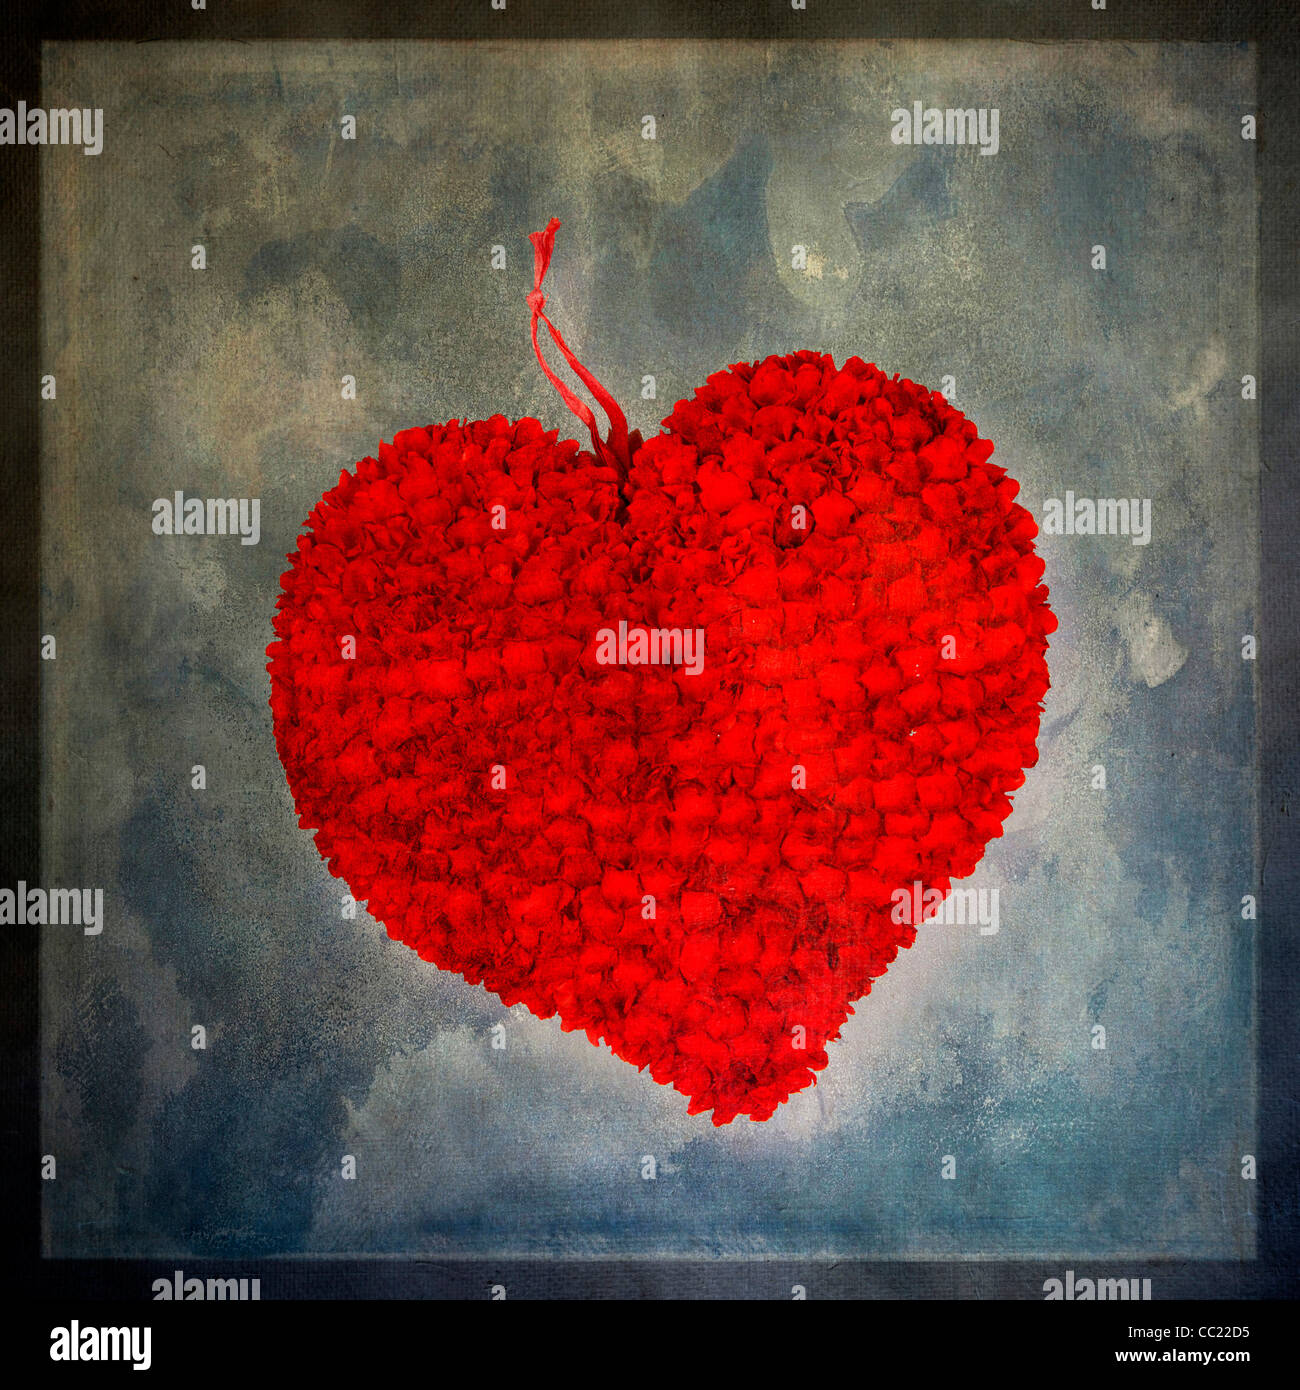 Heart, textured Stock Photo